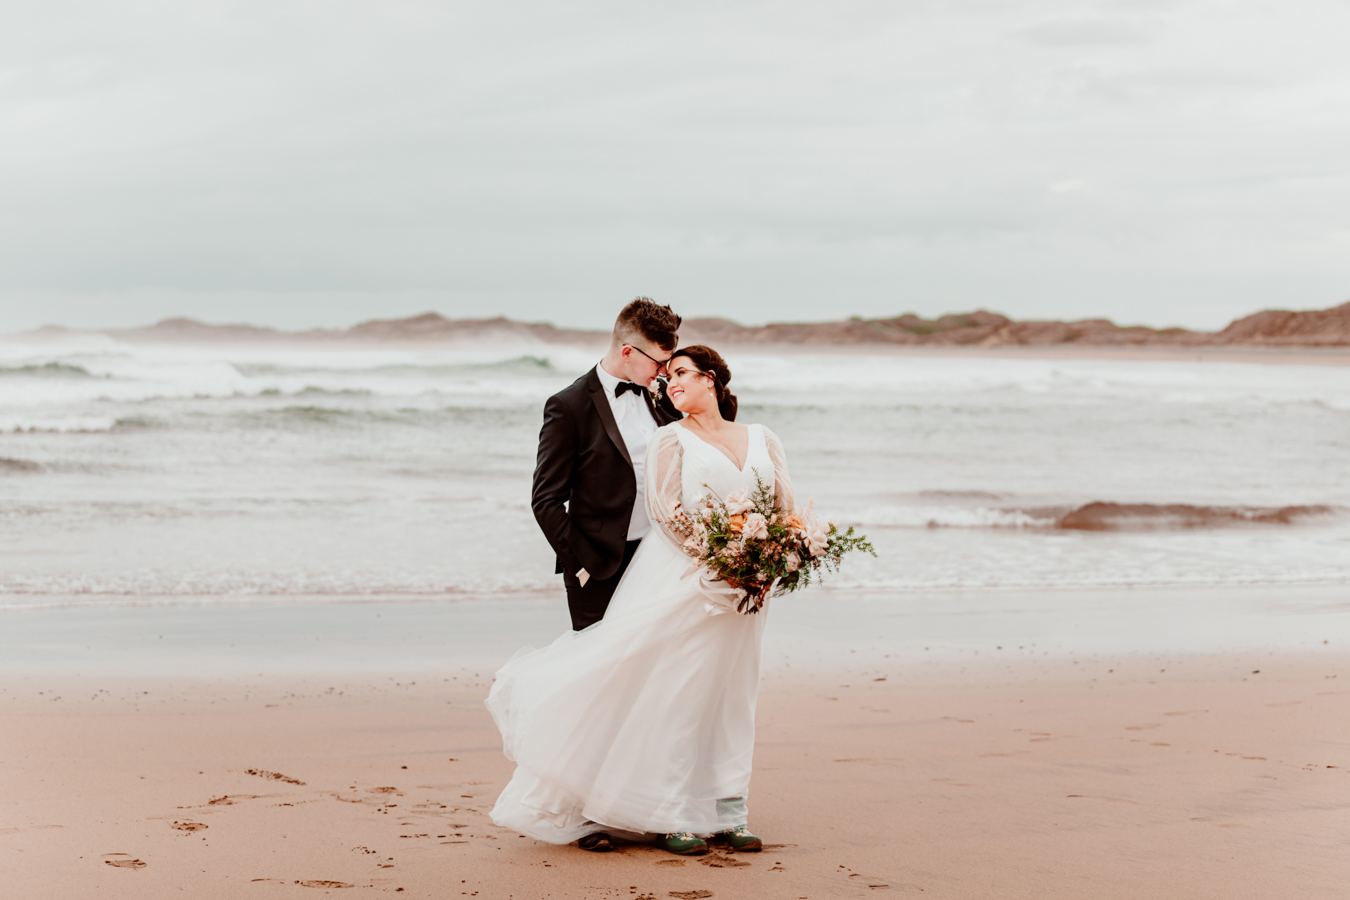 Mariée en robe de mariée ligne A romantique avec manches évêque sur la plage appelée Joanne par Rebecca Ingram